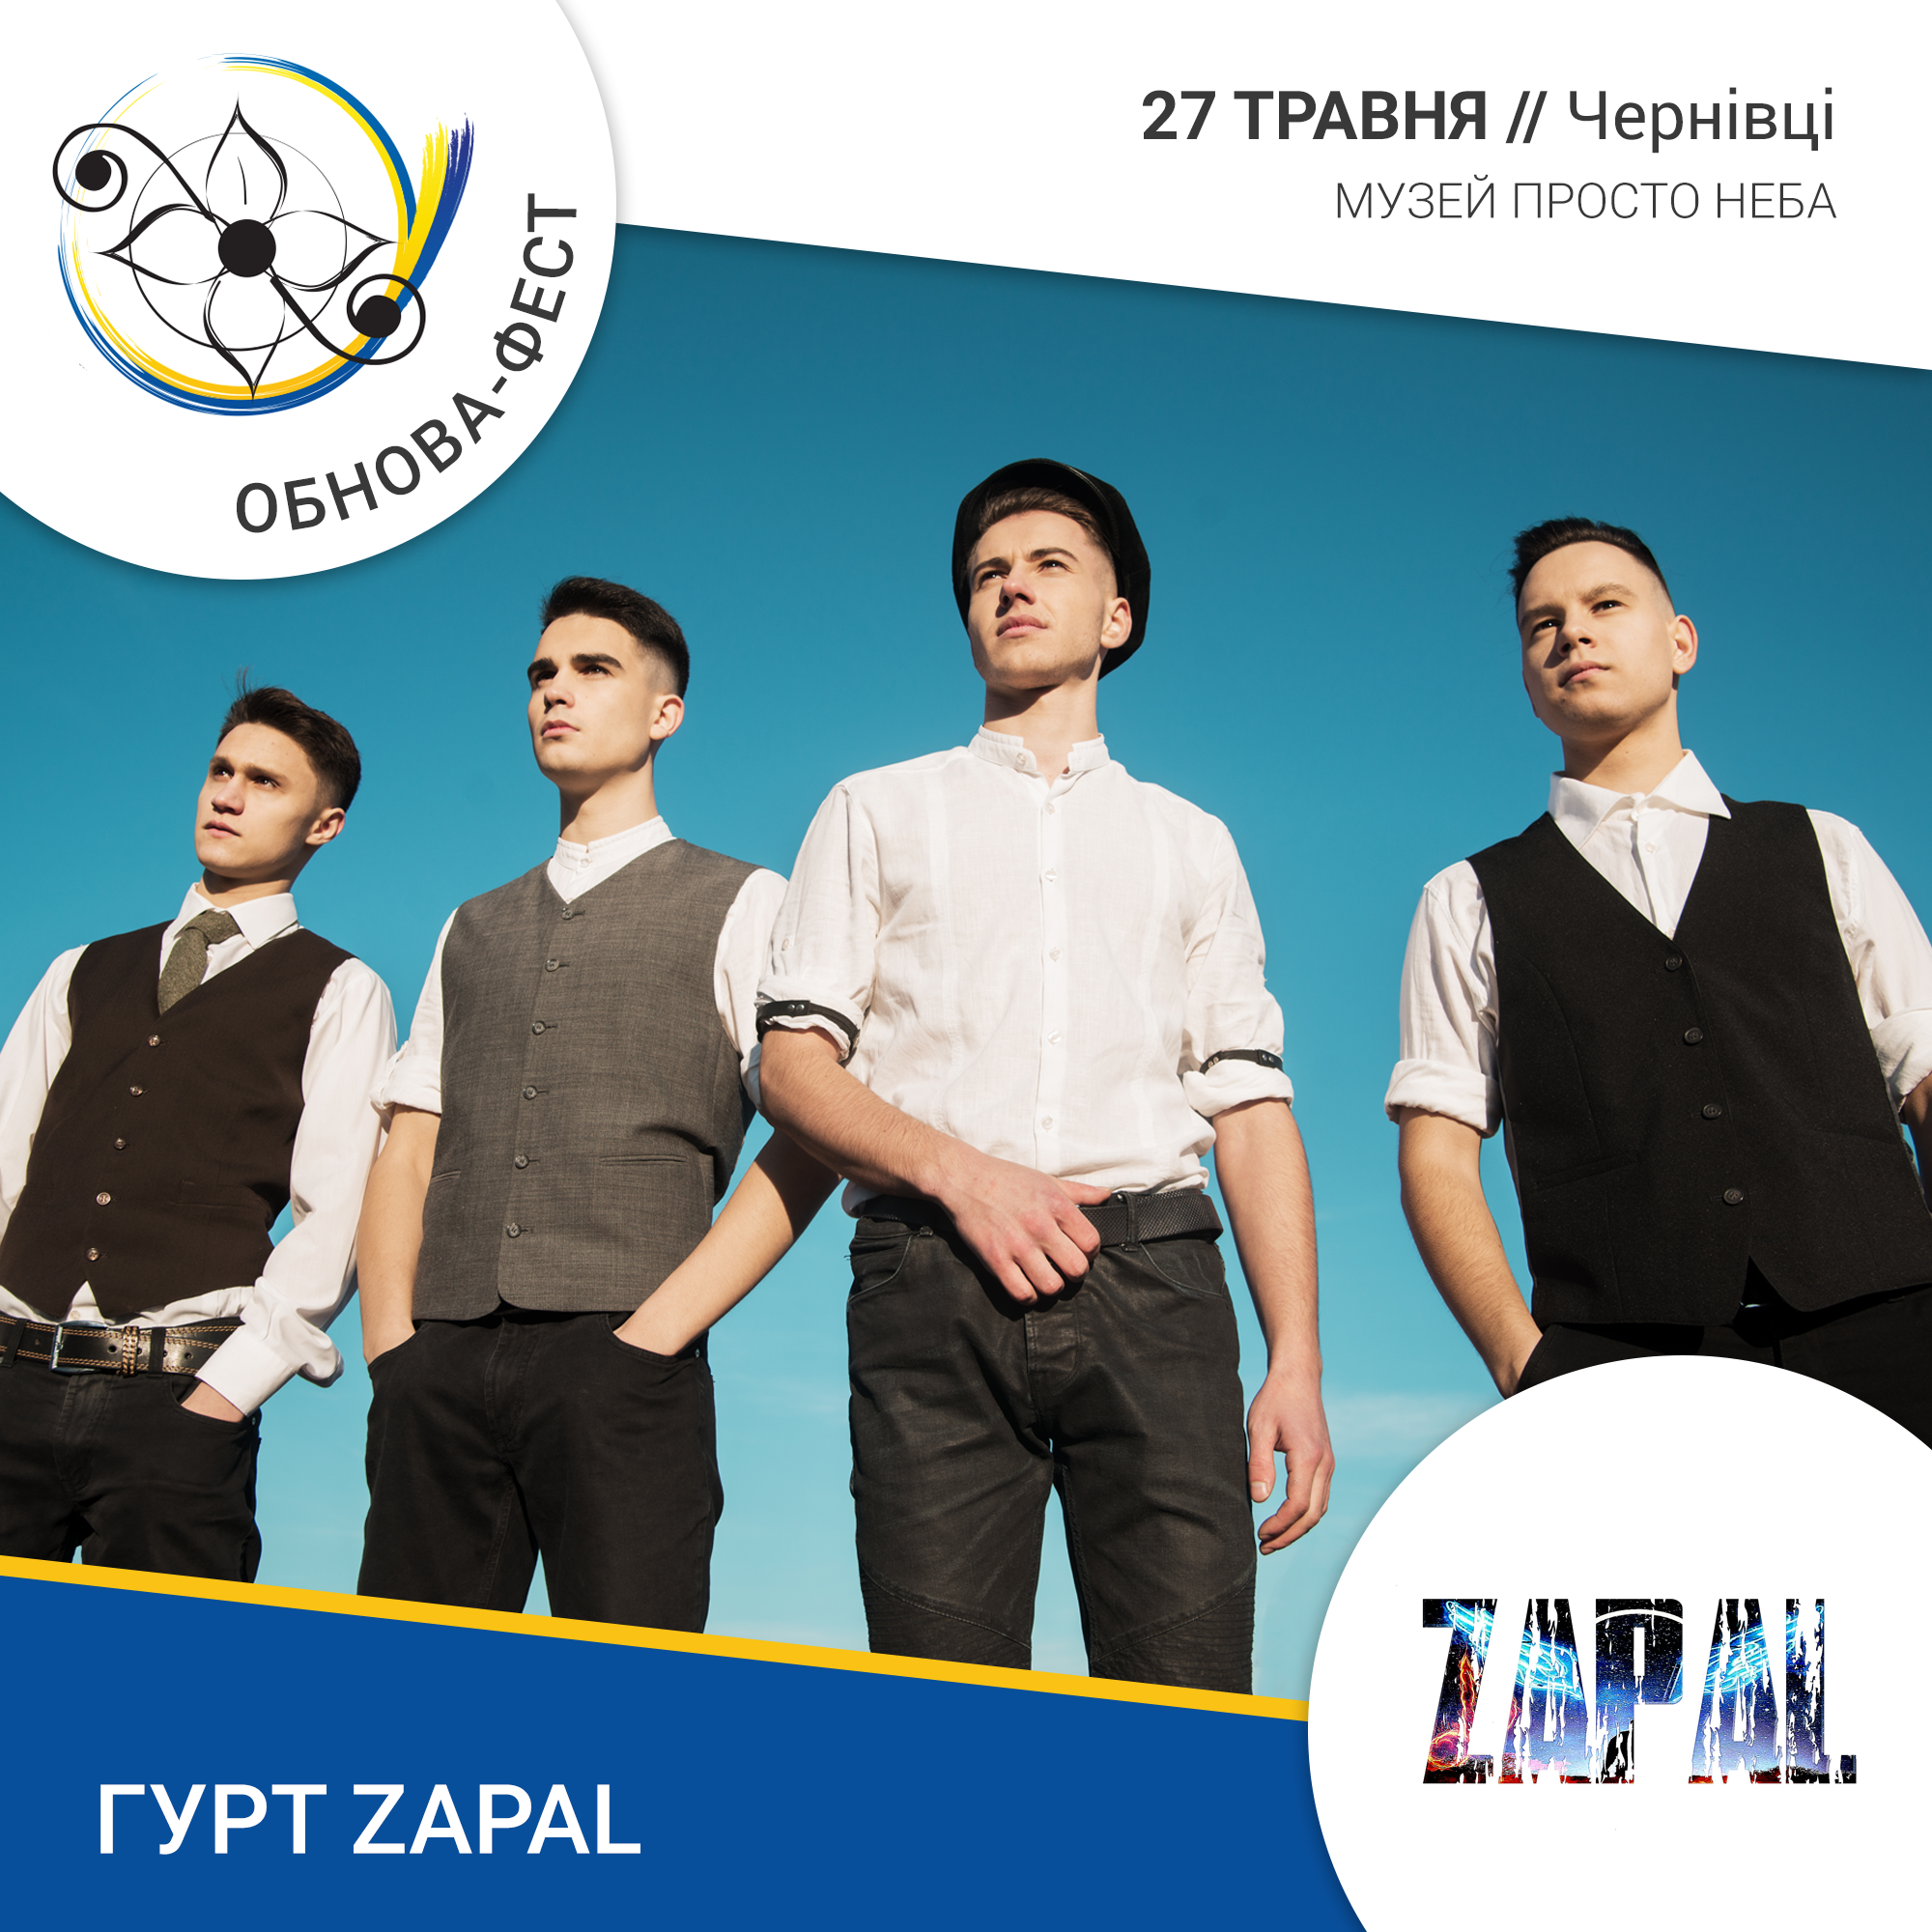 Нове ім'я на "Обнова-фесті" - молодий чернівецький гурт ZAPAL